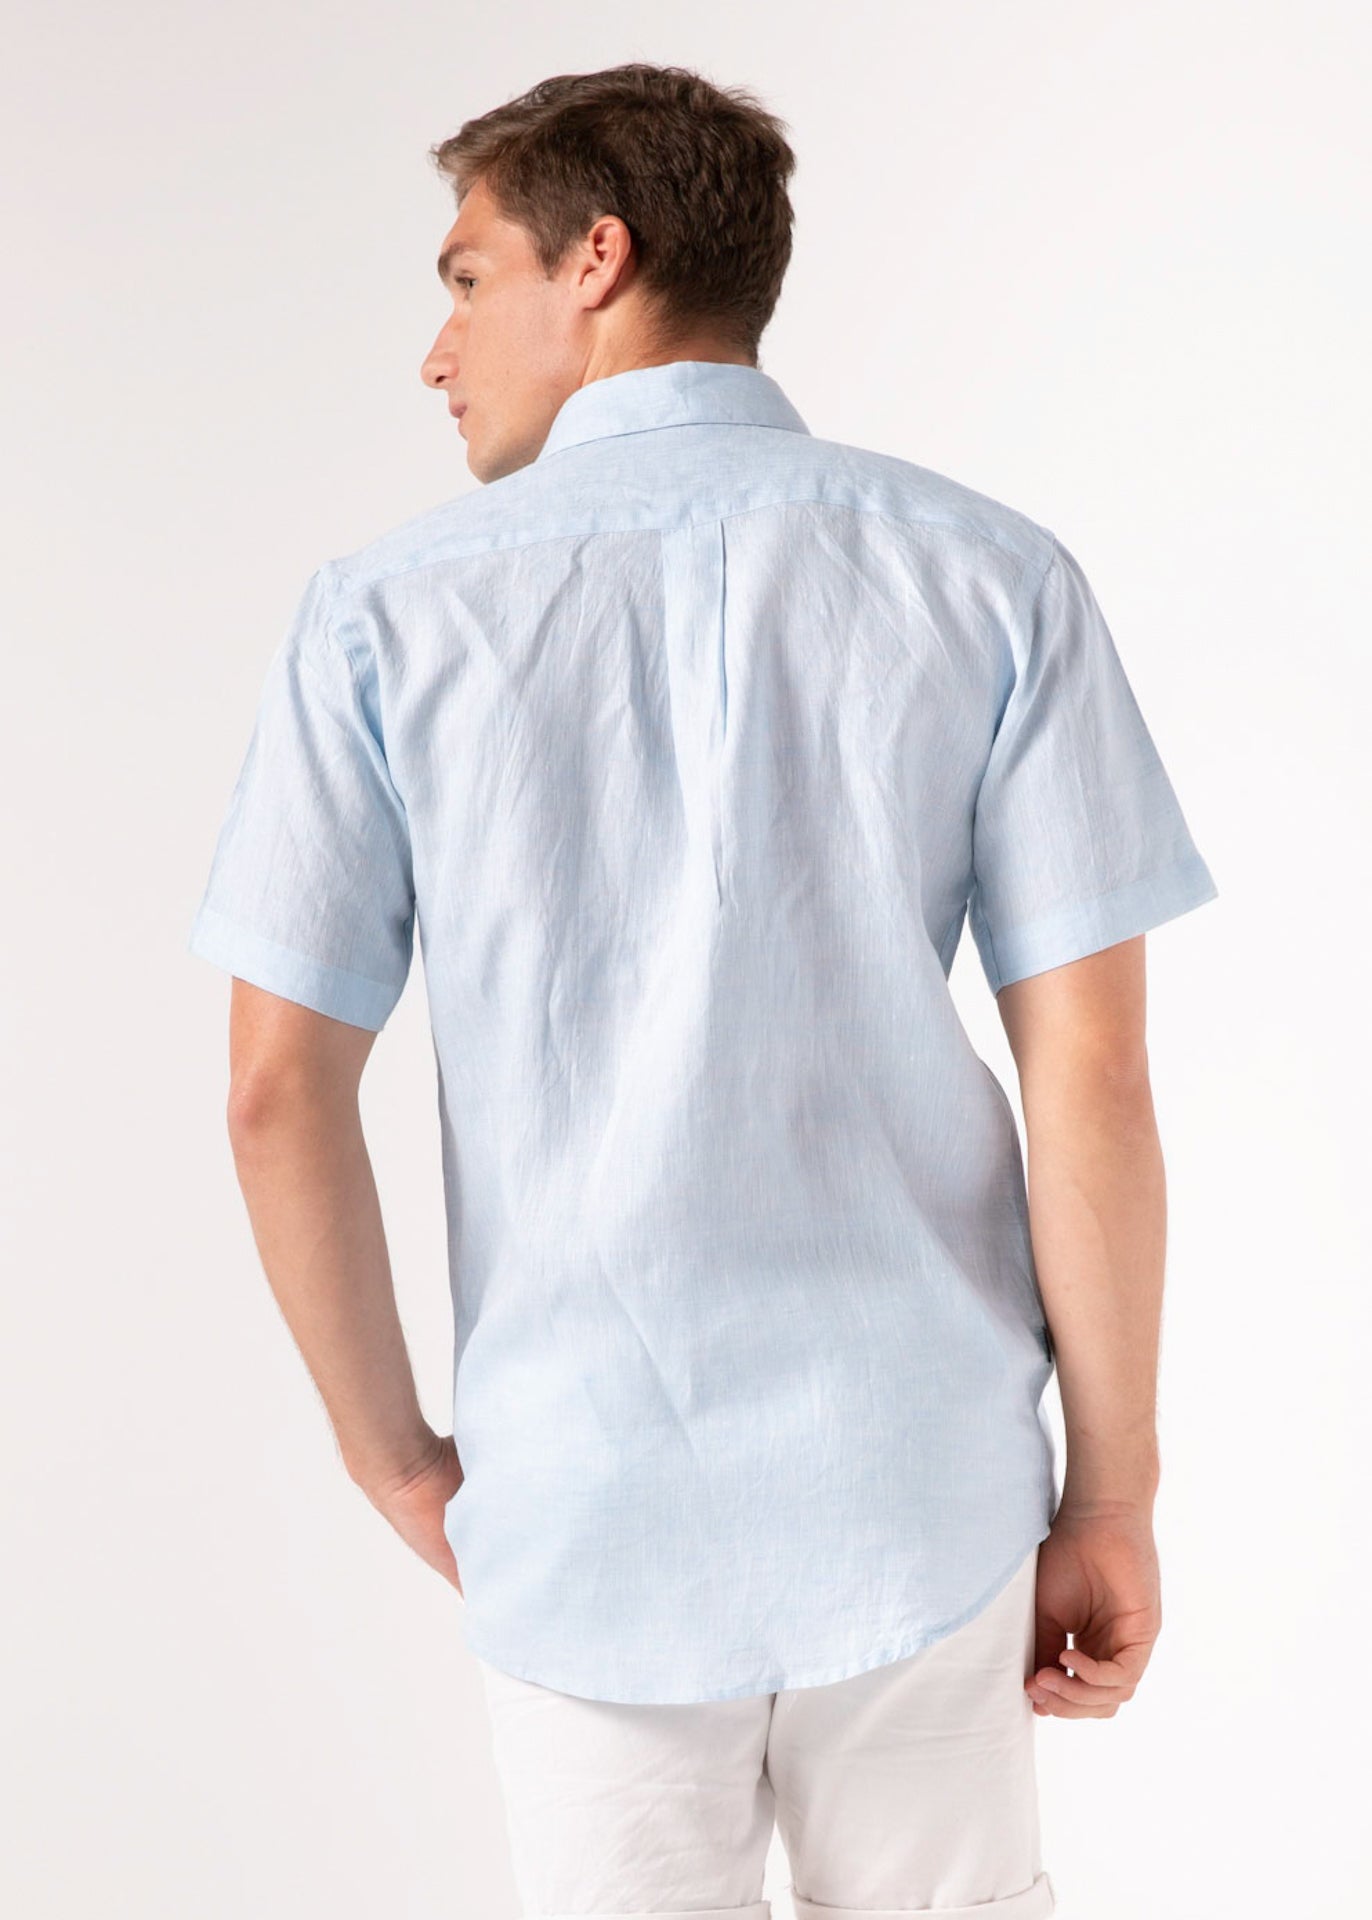 Capri Blue - Short Sleeve Italian Linen Shirt - Mr. Linen Co Mr. Linen CO